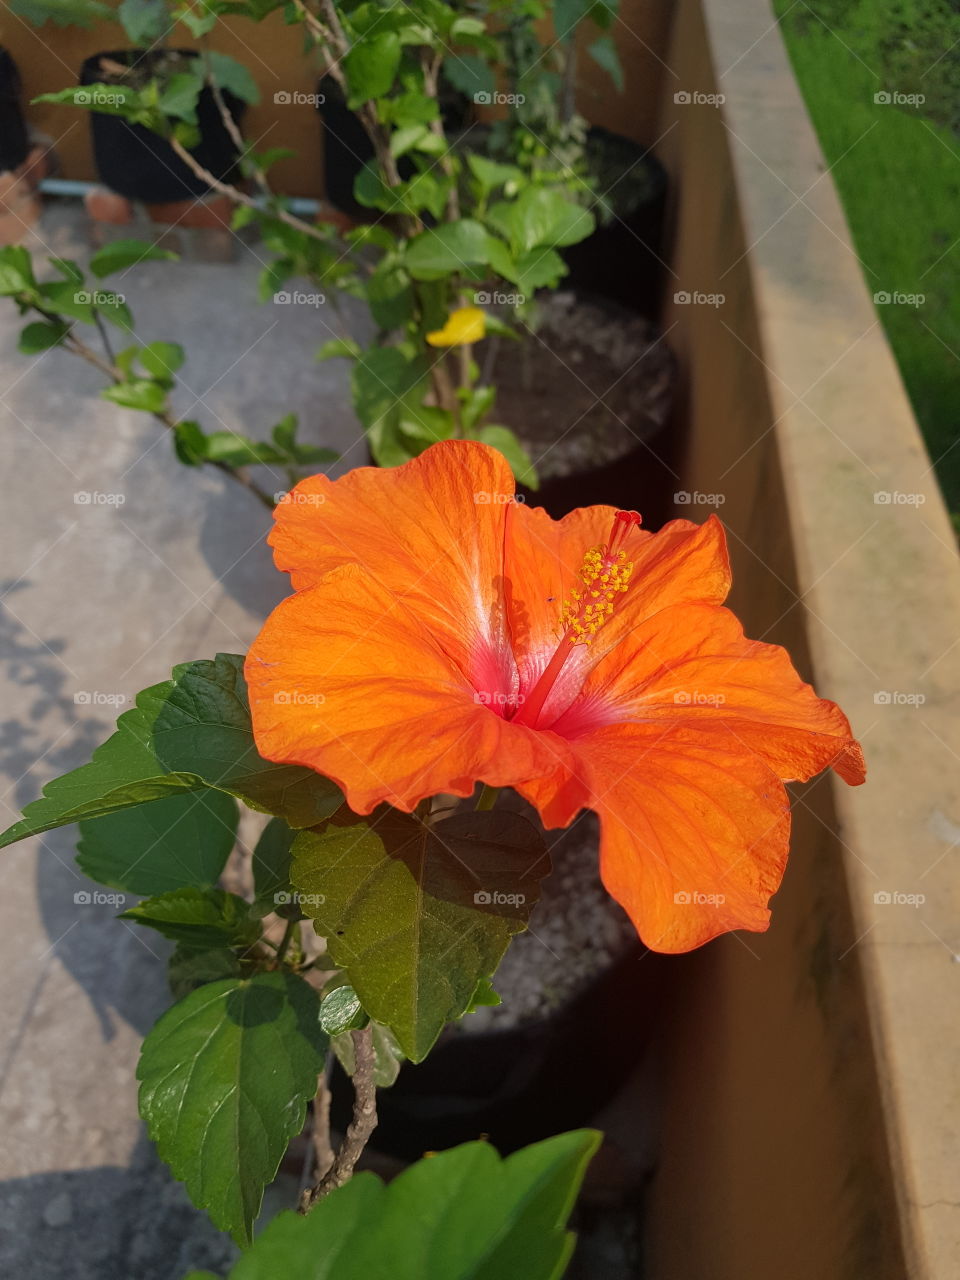 jaba flower around my garden